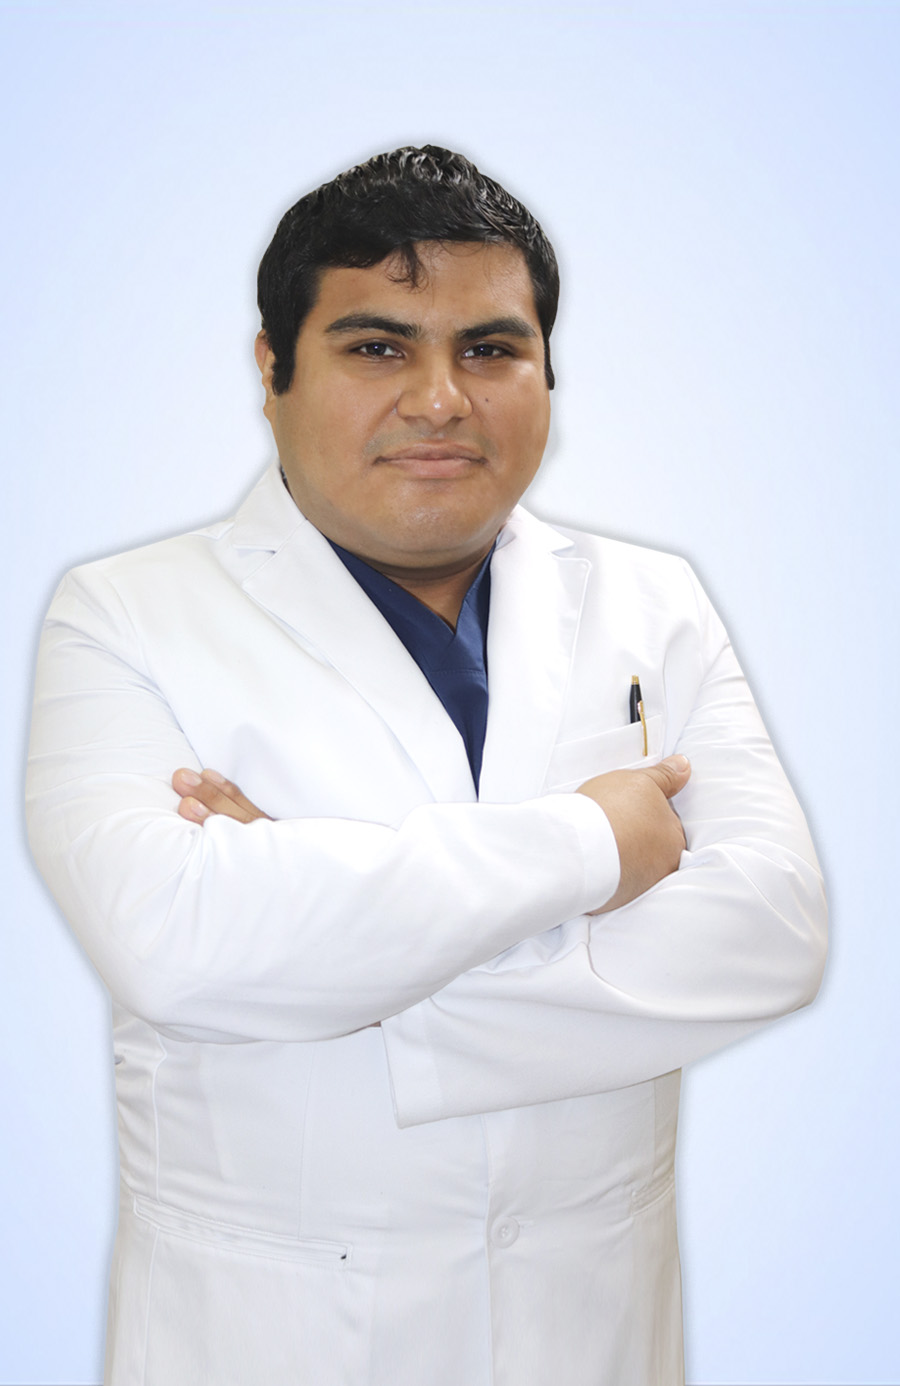 DR. VASQUEZ